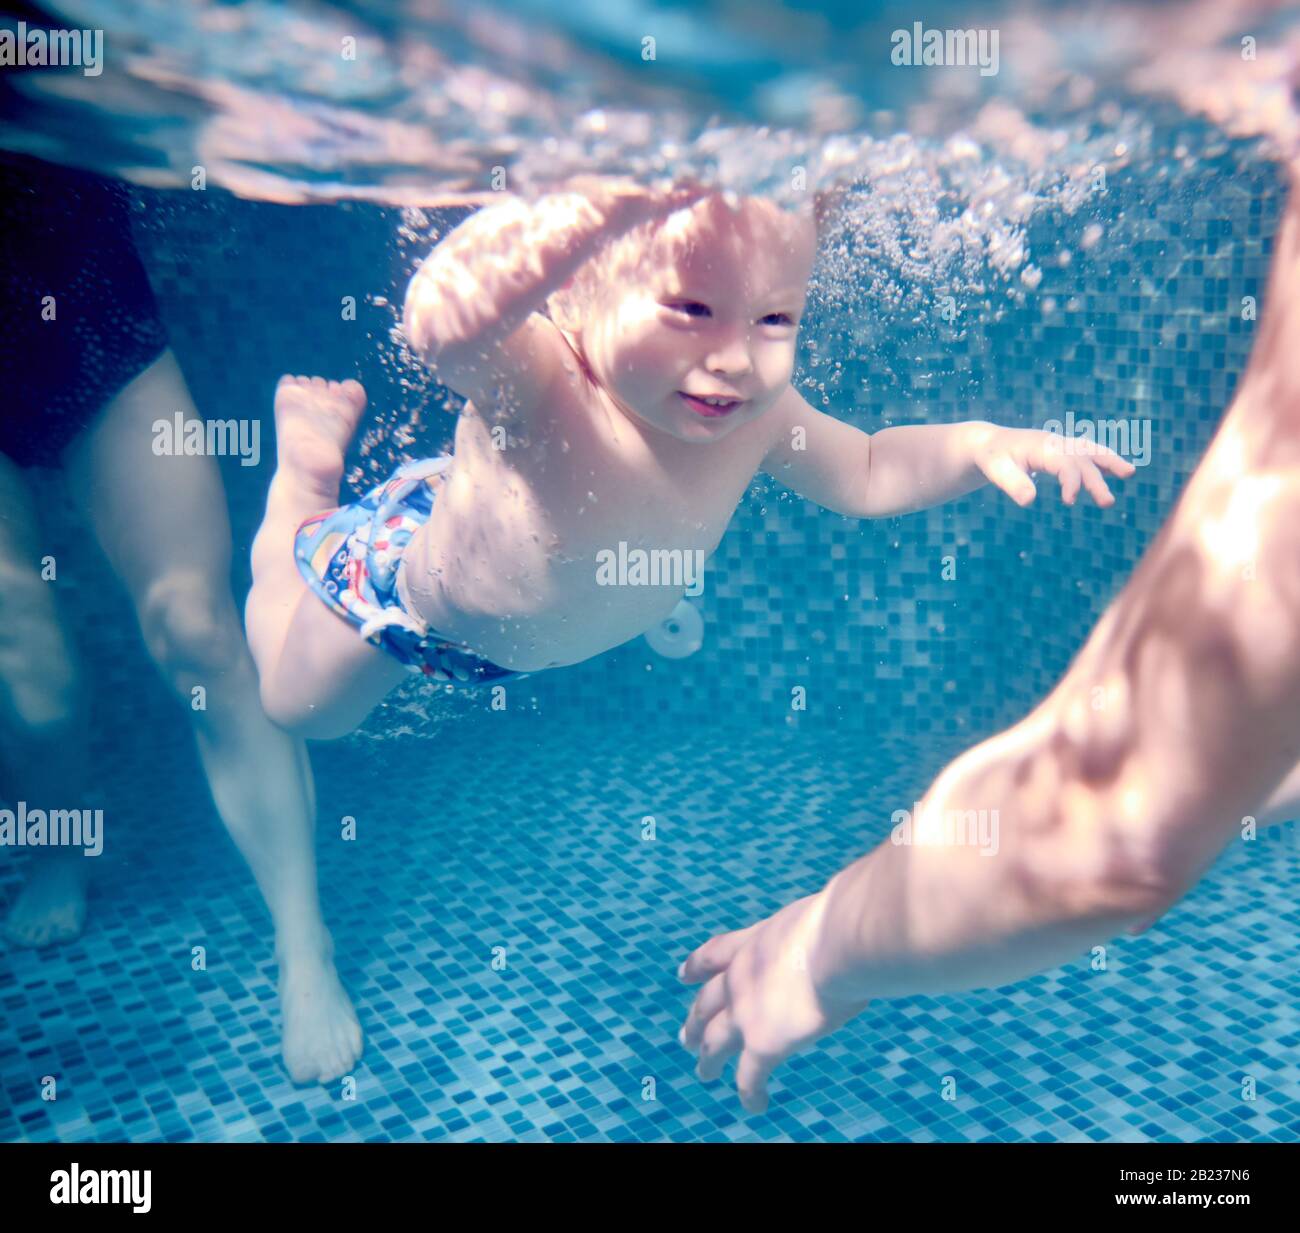 Primer plano de un lindo niño disfrutando nadando bajo el agua en la piscina. Feliz niño activo mirando a un lado y sonriendo mientras equilibra en agua azul cristalino. Concepto de la infancia, natación y actividades deportivas acuáticas. Foto de stock